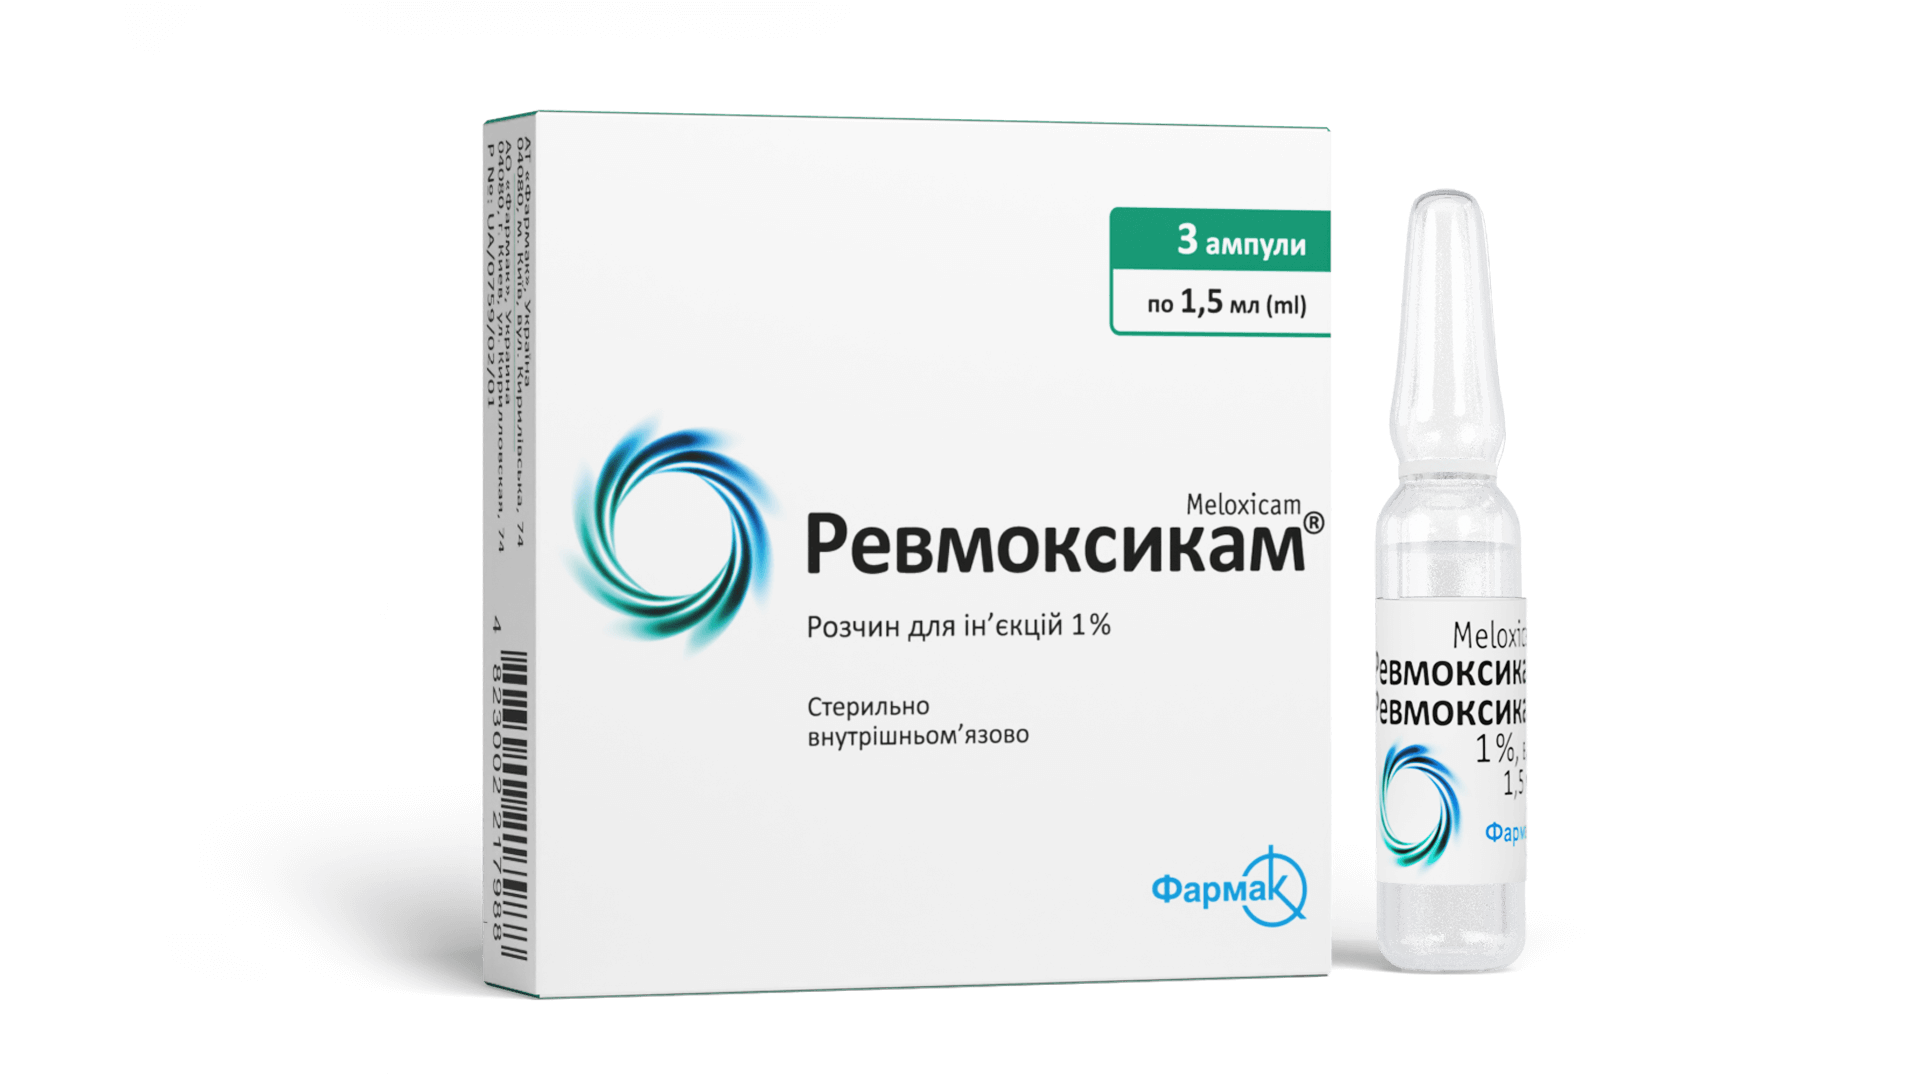 Ревмоксикам® (раствор) (3)